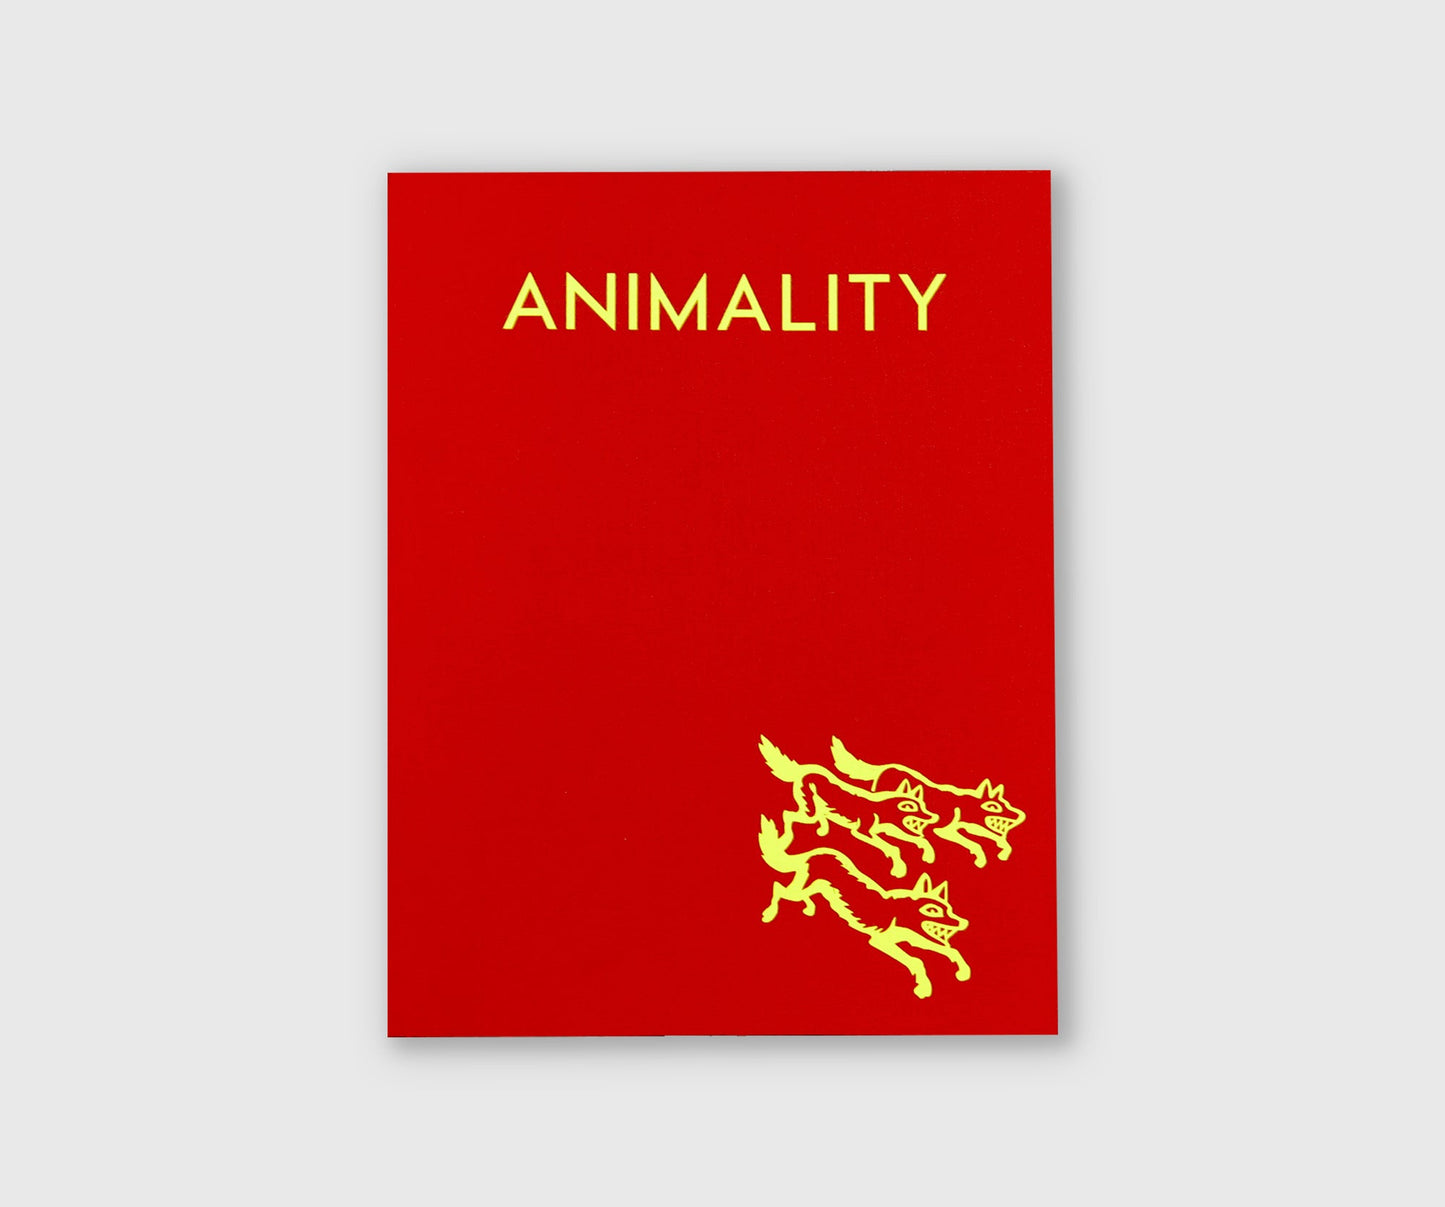 Animality